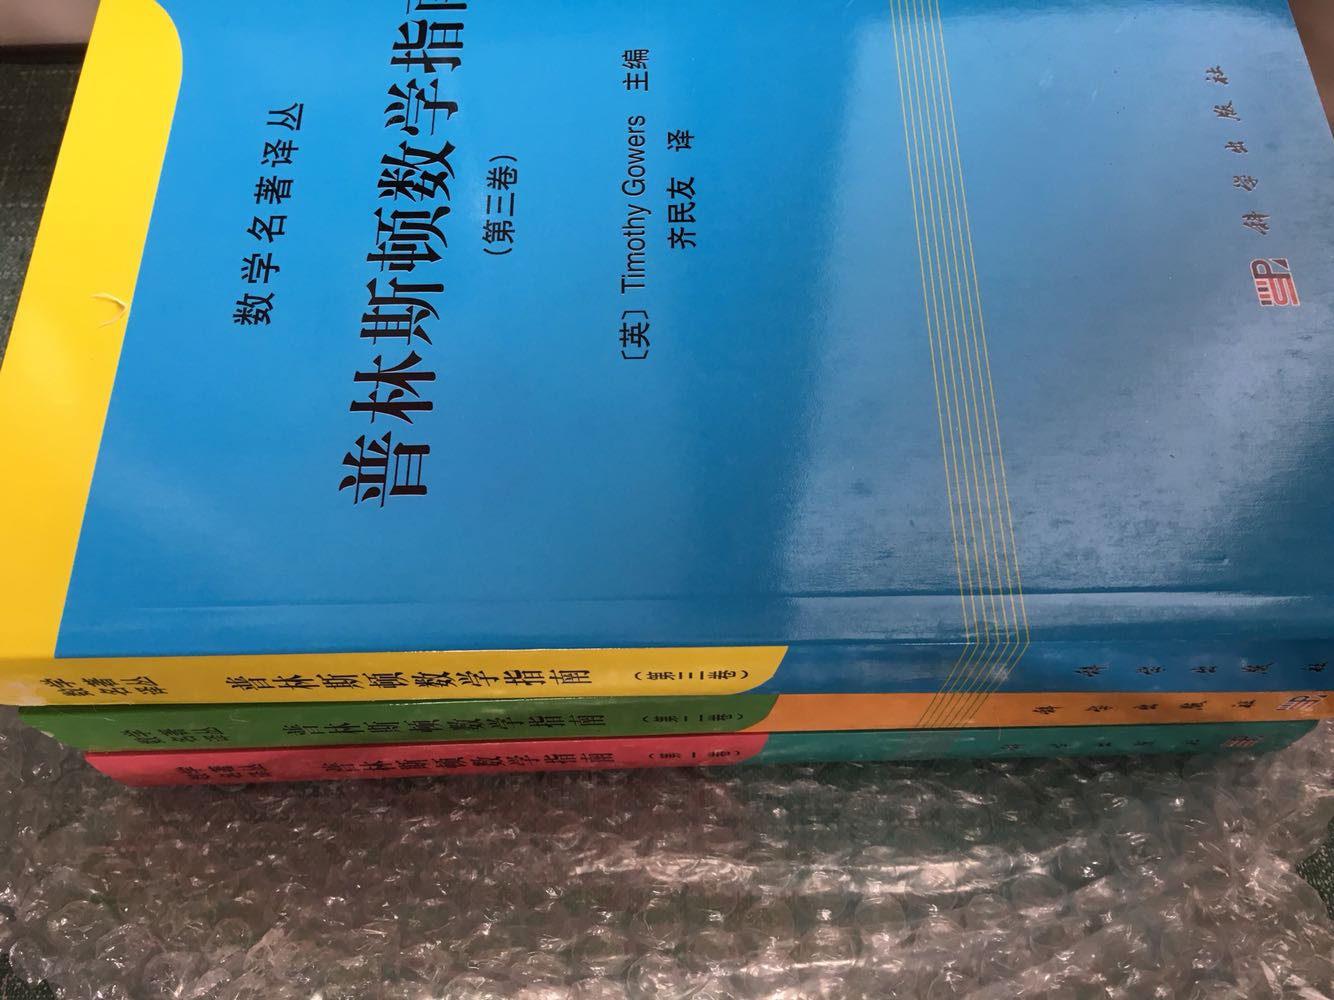 这套书是从北京发来的，外面包装完好，里面的塑封裂了一些书底留了点黑色指印，整体还算干净整洁。晒下三卷书的目录首页和译者，内容广泛，个人认为值得读下去，值得收藏。